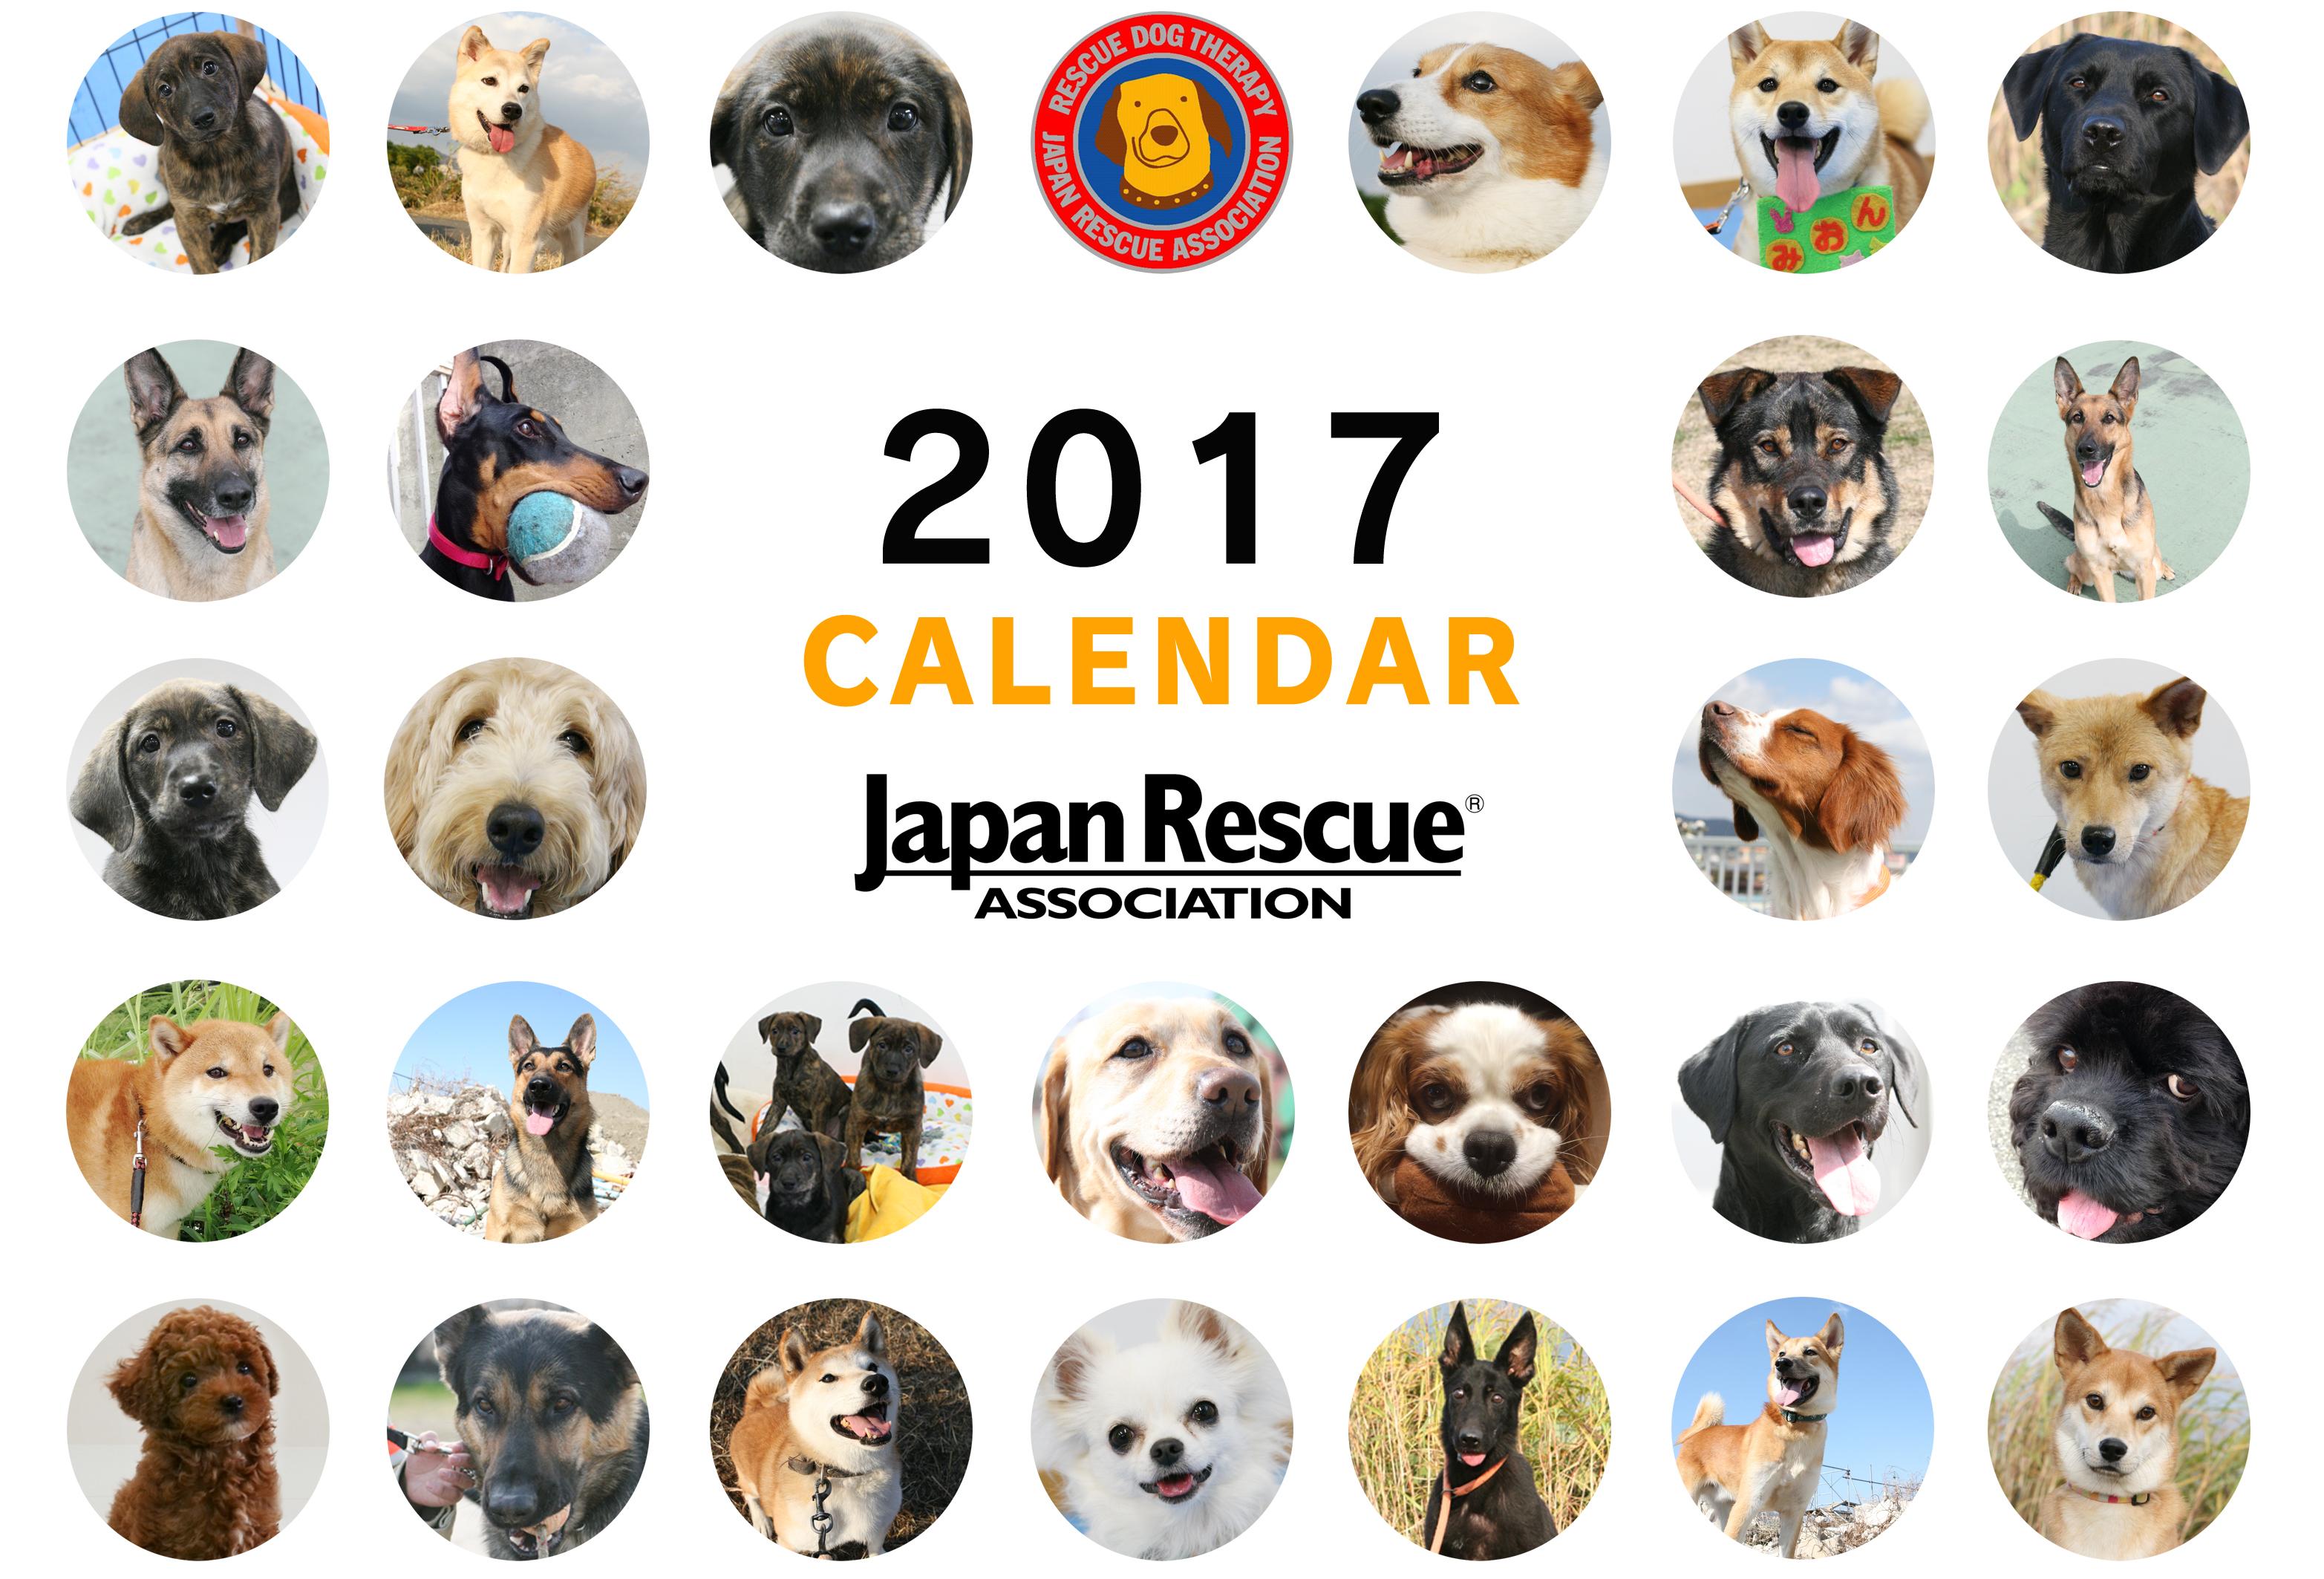 お待たせしました 17年オリジナルカレンダーが出来上がりました 災害救助犬 セラピードッグを育成 派遣する認定npo法人 日本レスキュー協会